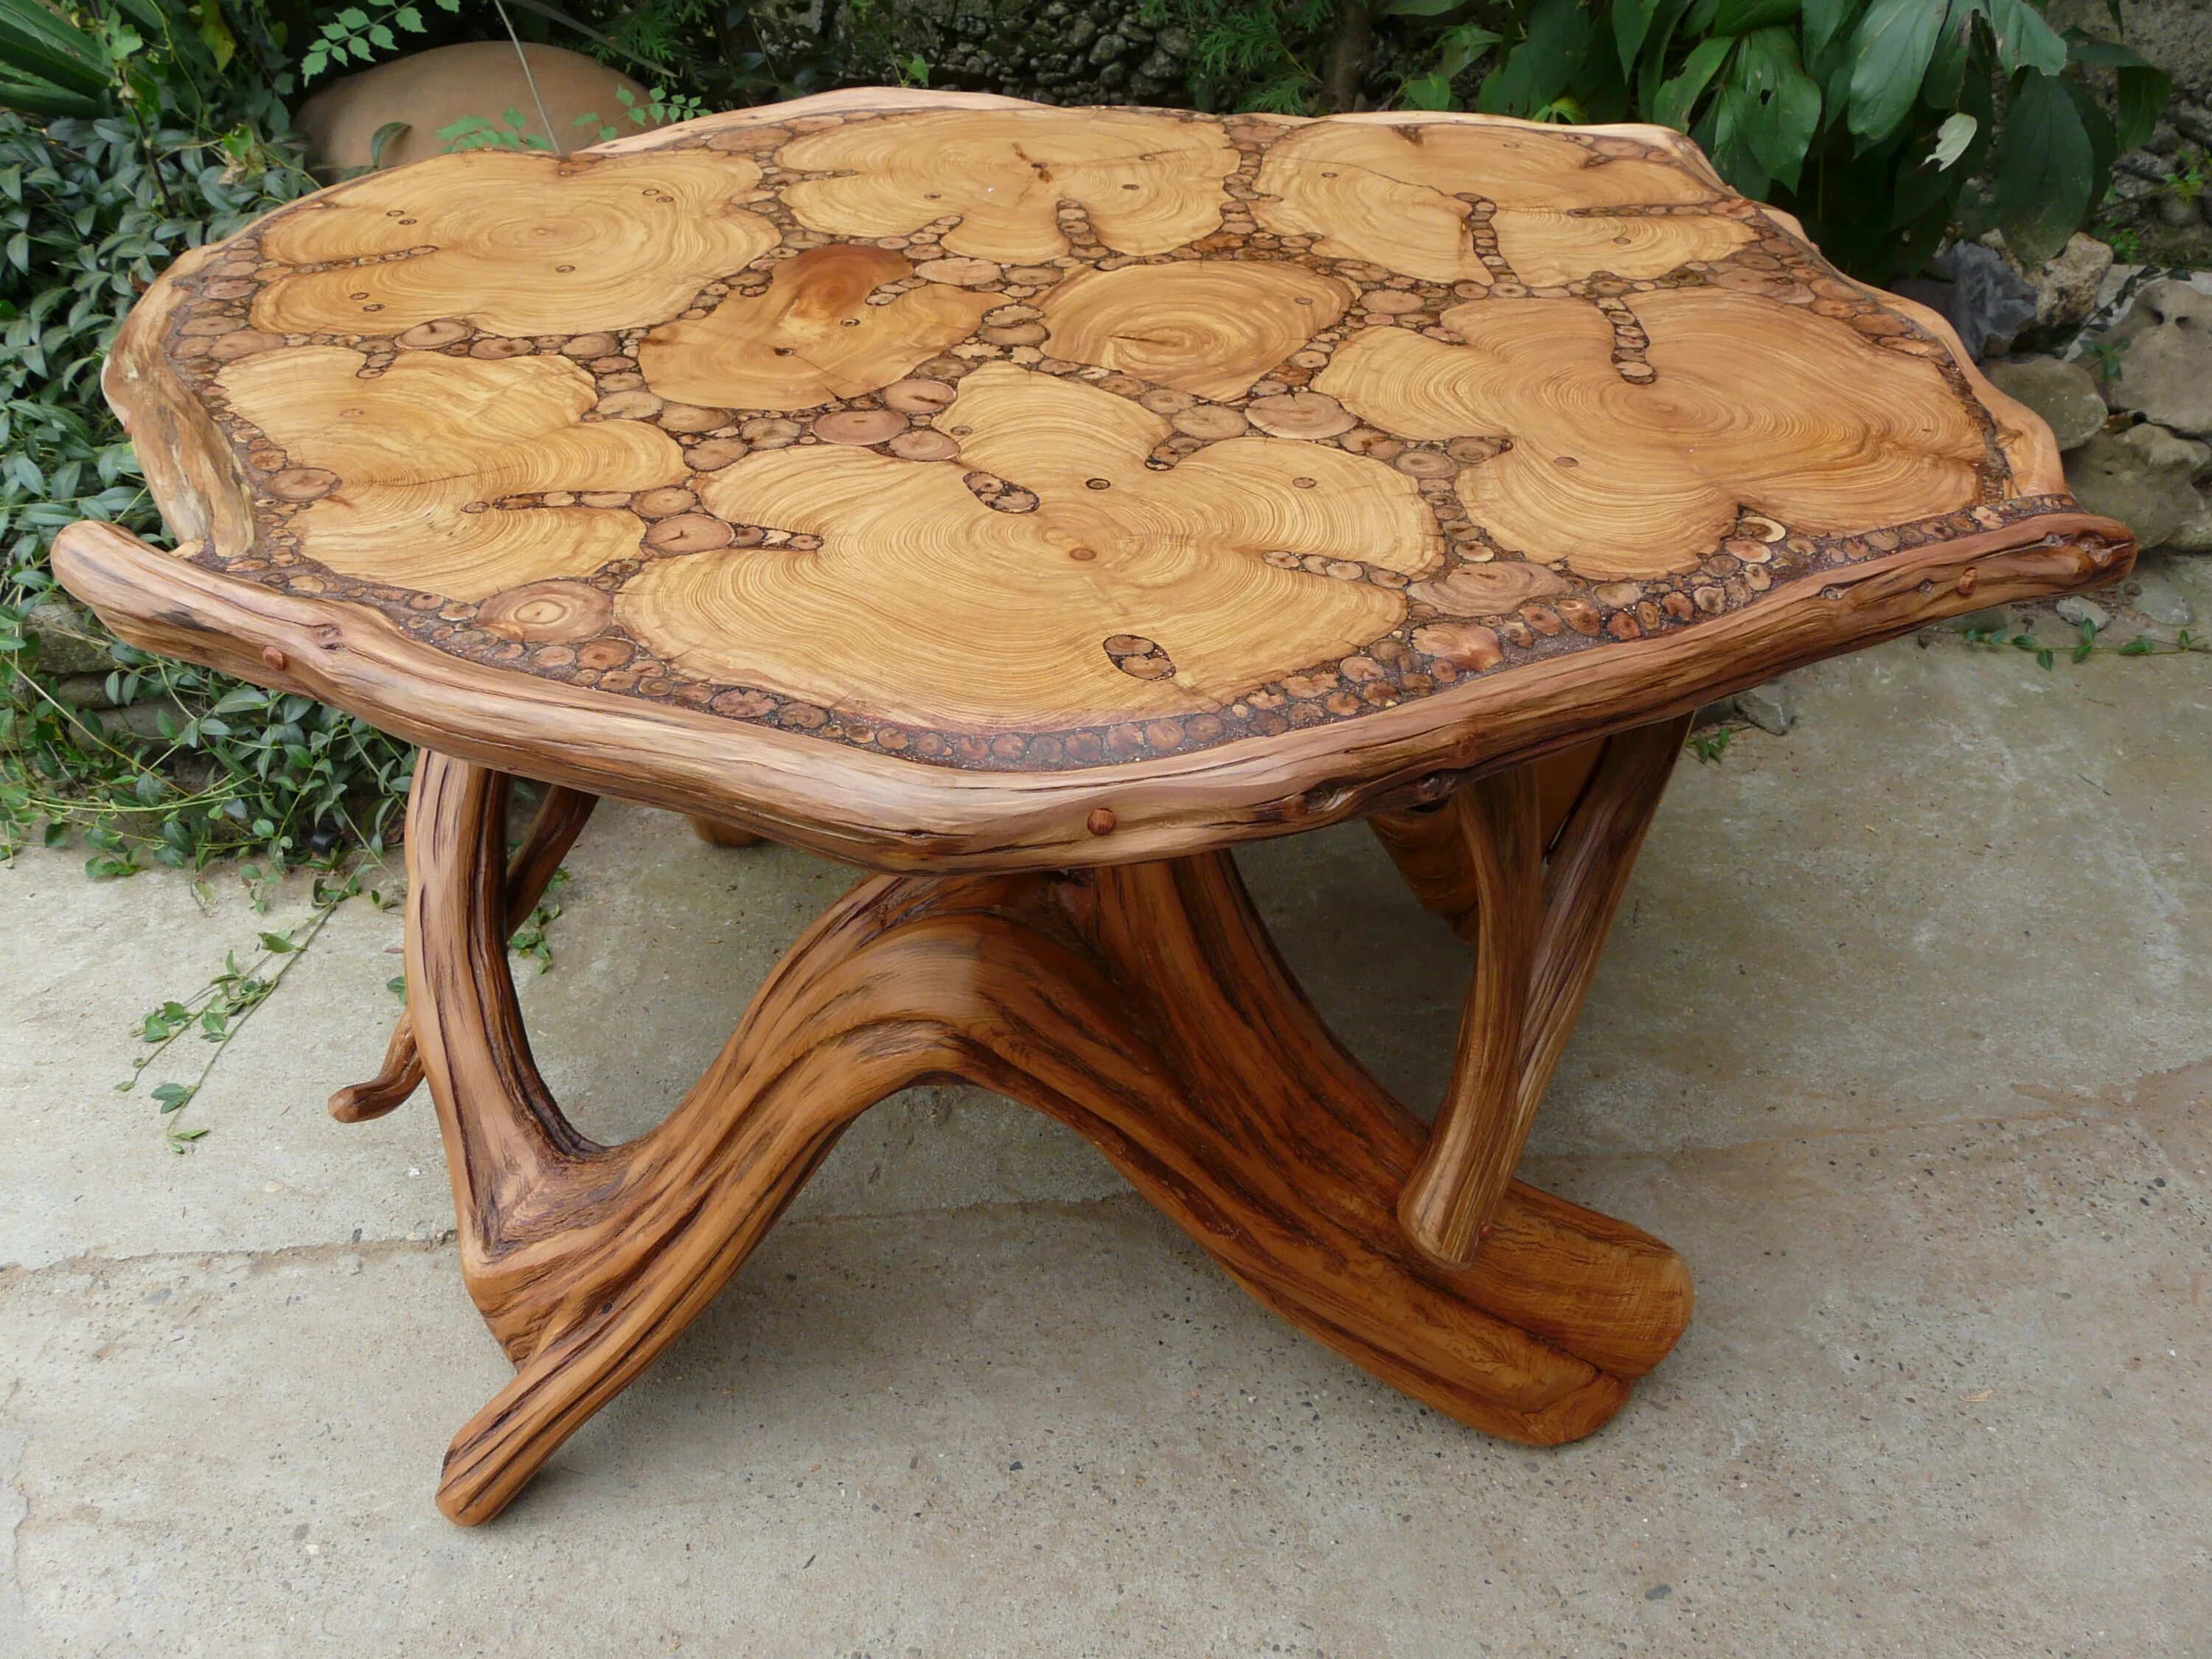 Интересные деревянные изделия. Эксклюзивные столы из дерева. Красивые деревянные изделия. Ручные изделия из дерева.